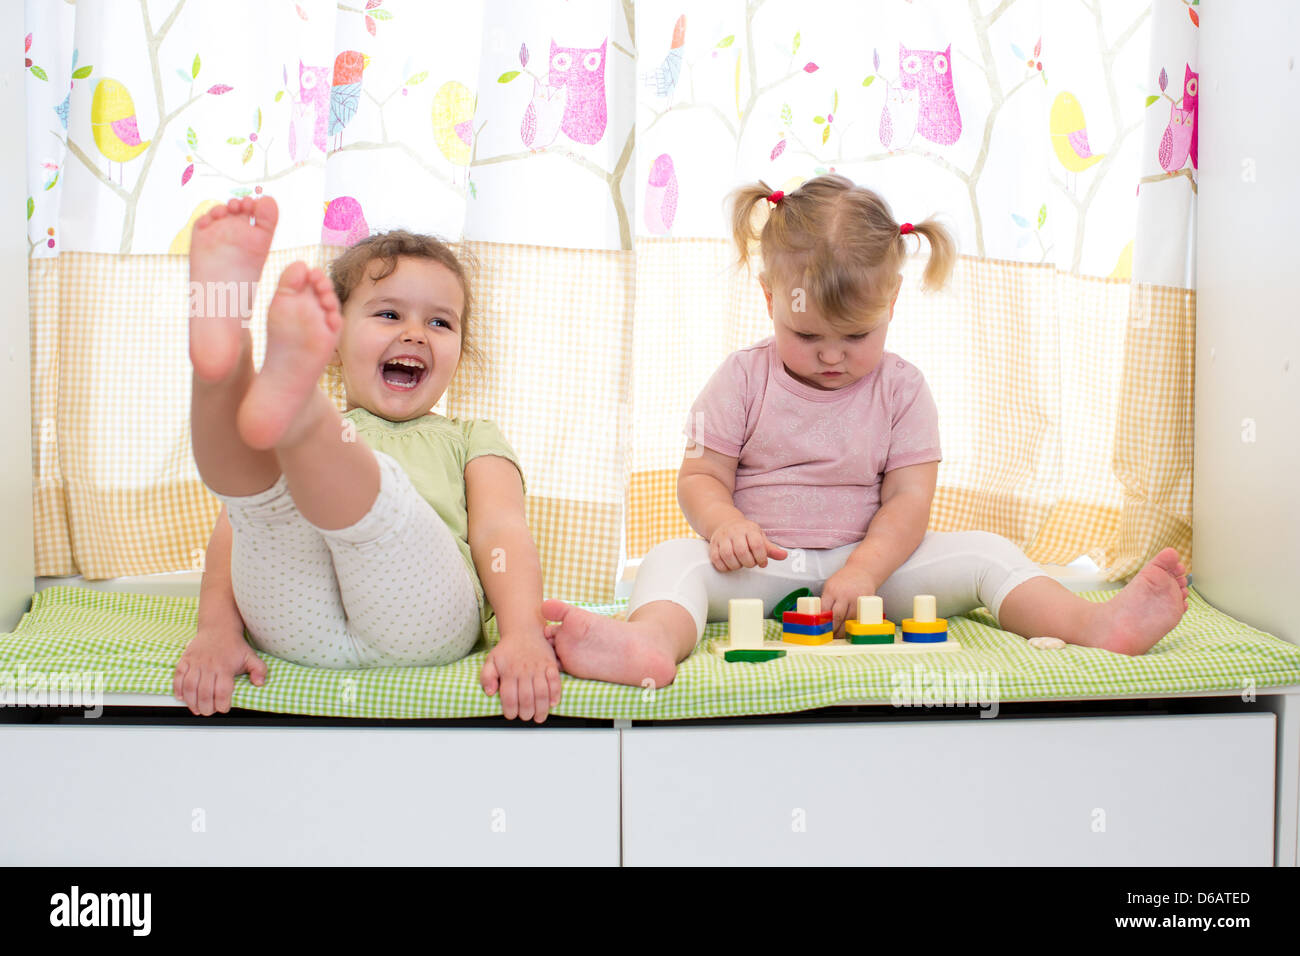 Bambini sorelle giocare insieme in ambienti chiusi Foto Stock